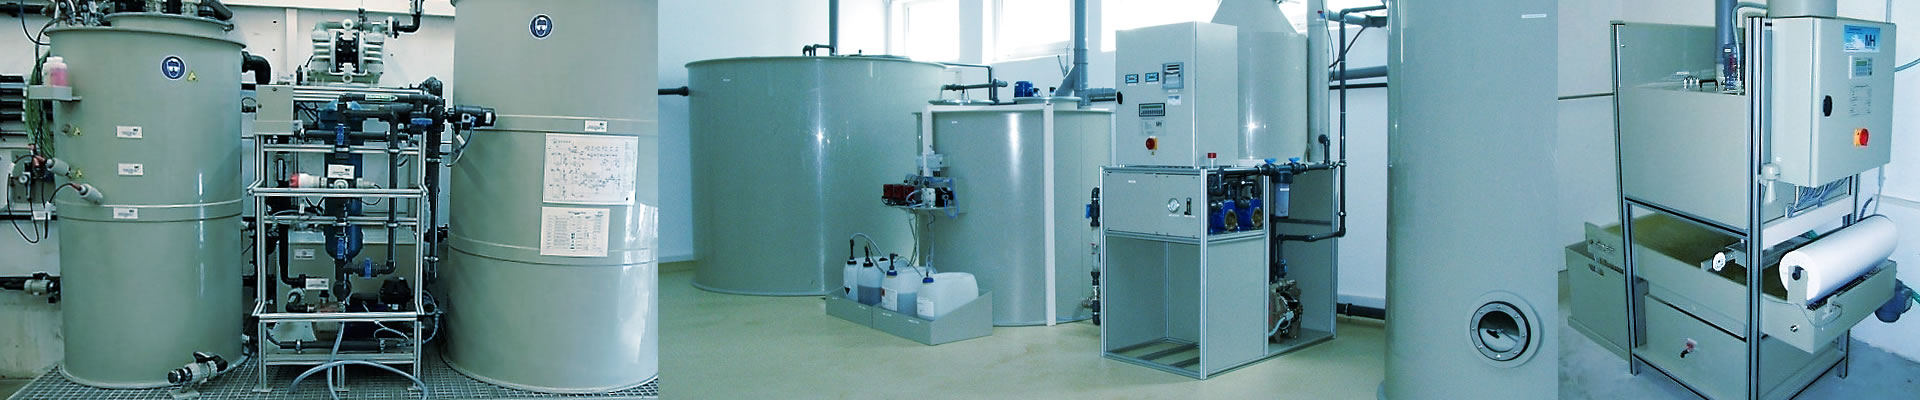 Emulsionsspaltanlagen – vollautomatische Anlage in platzsparender, kompakter Bauweise